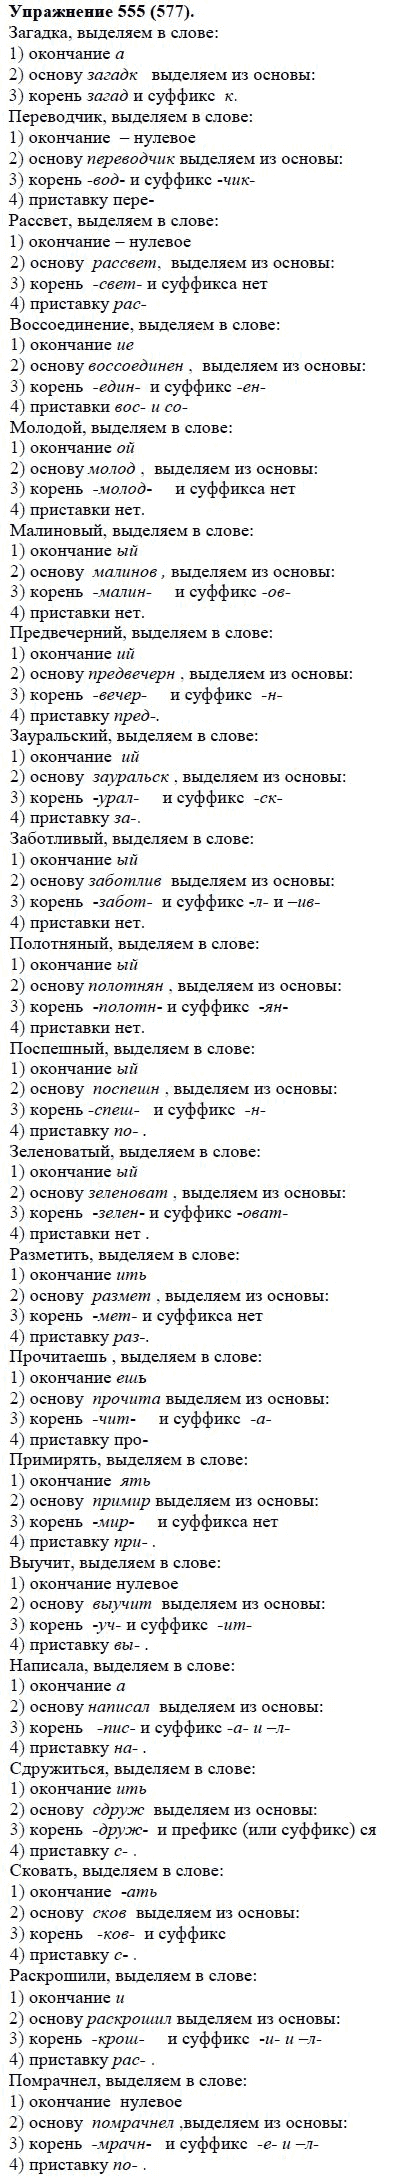 Практика, 5 класс, А.Ю. Купалова, 2007-2010, задание: 555(577)